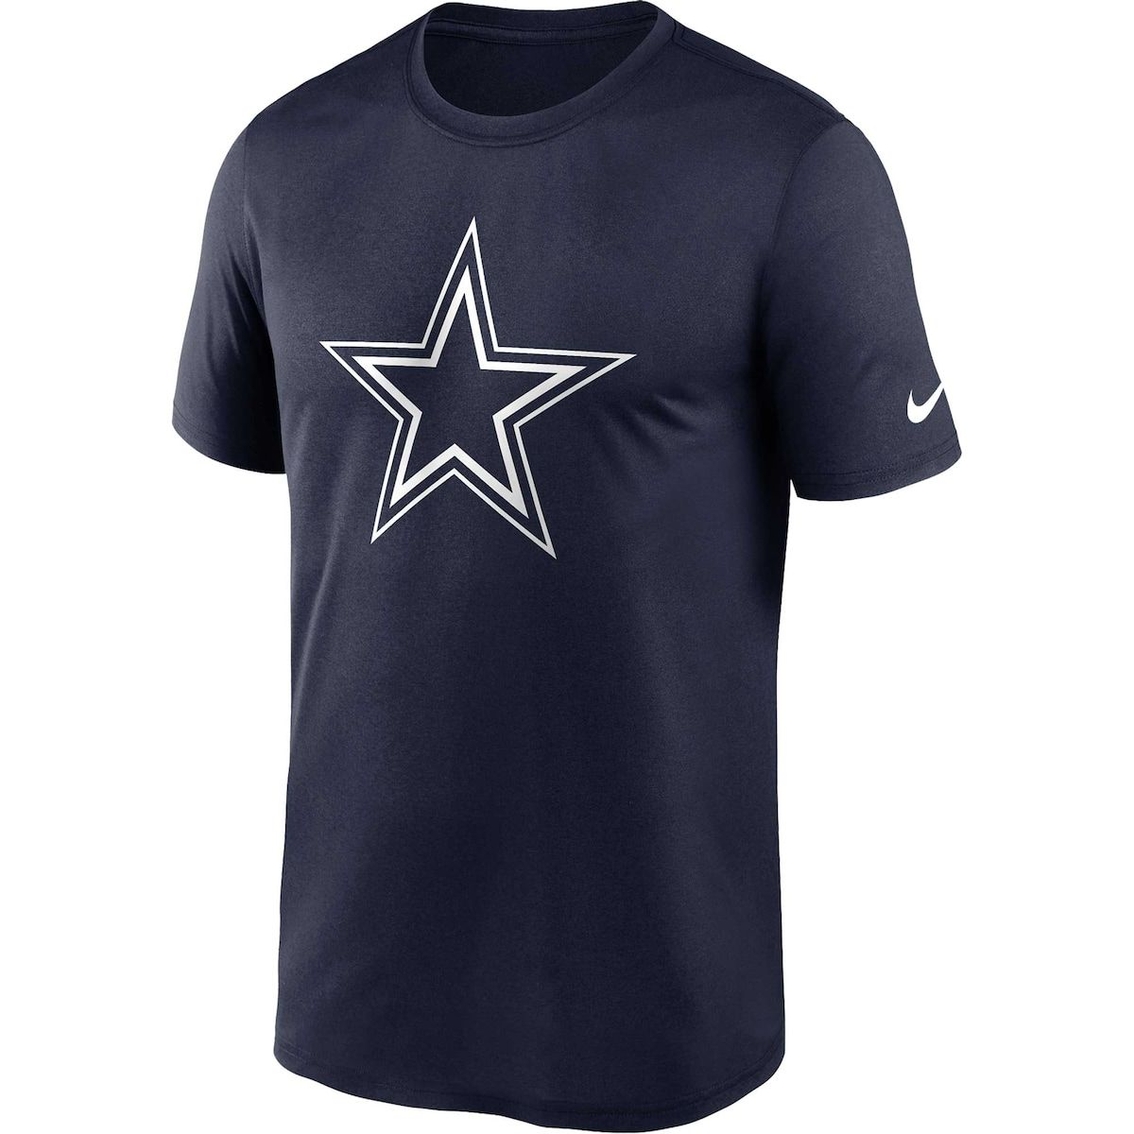 Nike Men's Navy Dallas Cowboys - Image 3 of 4